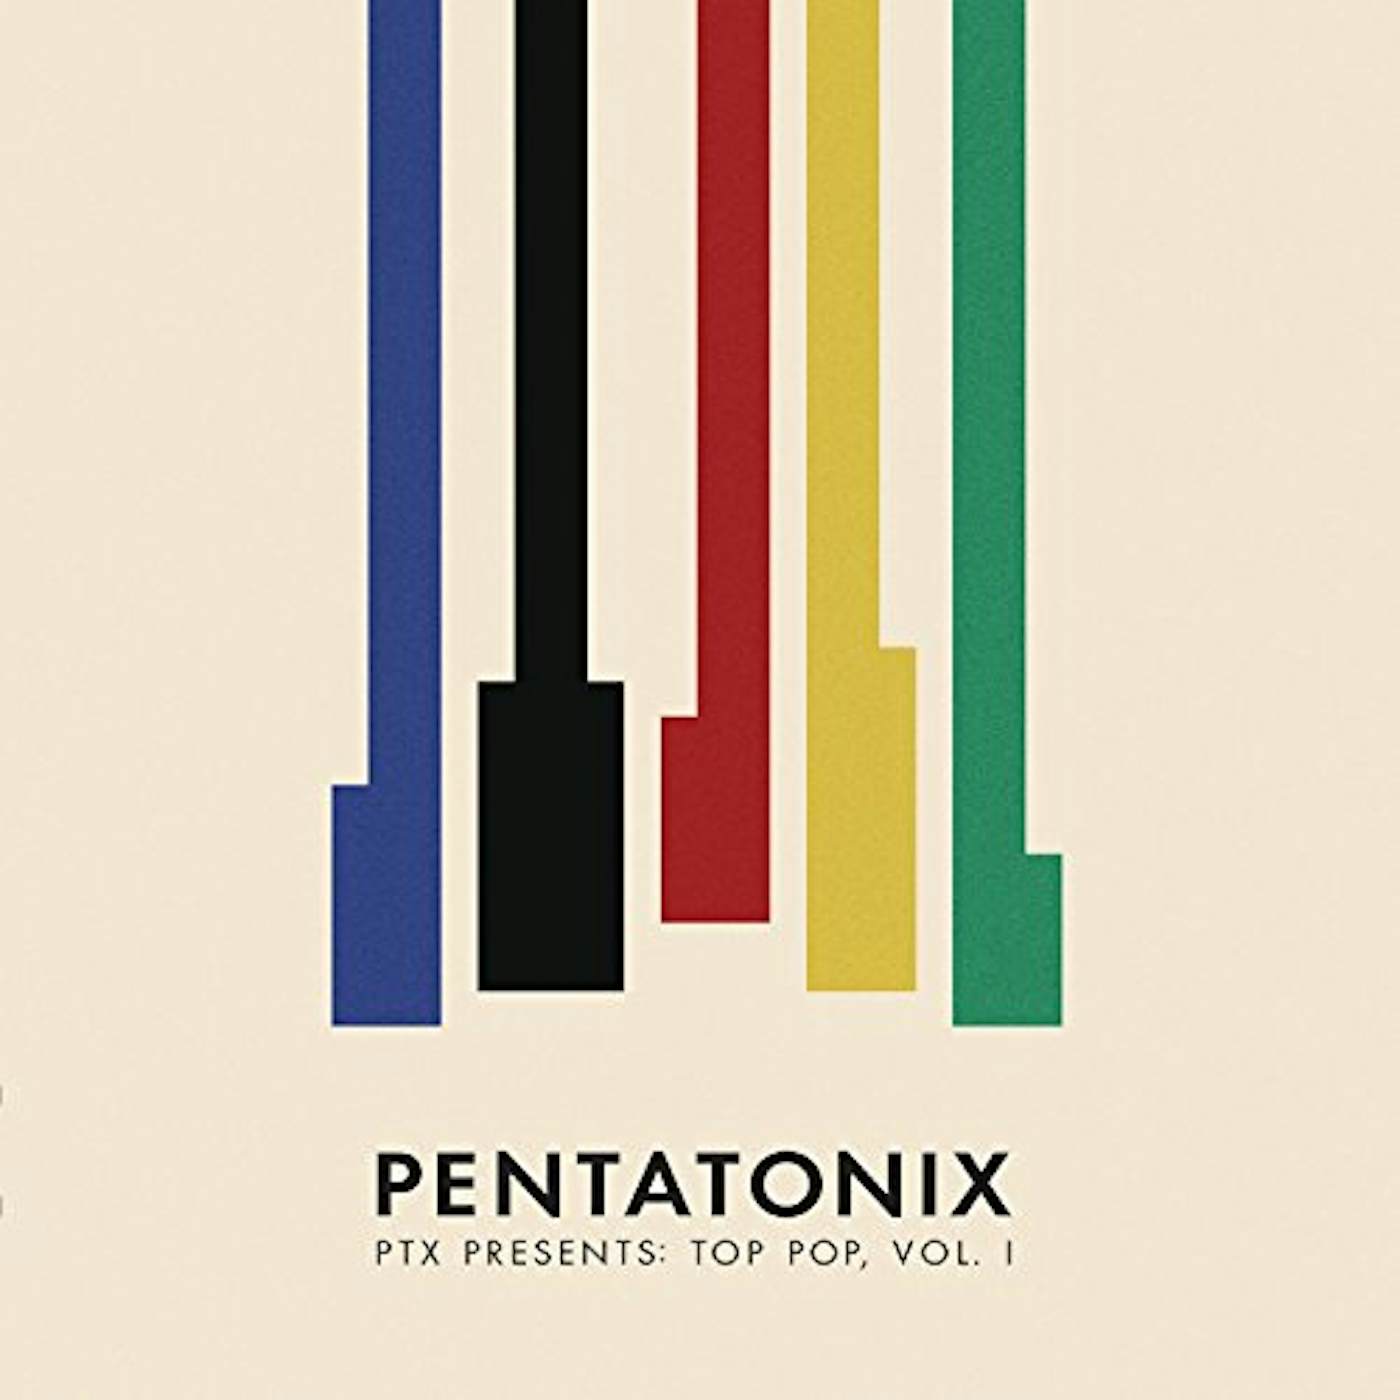 Pentatonix PTX PRESENTS: TOP POP 1 Vinyl Record